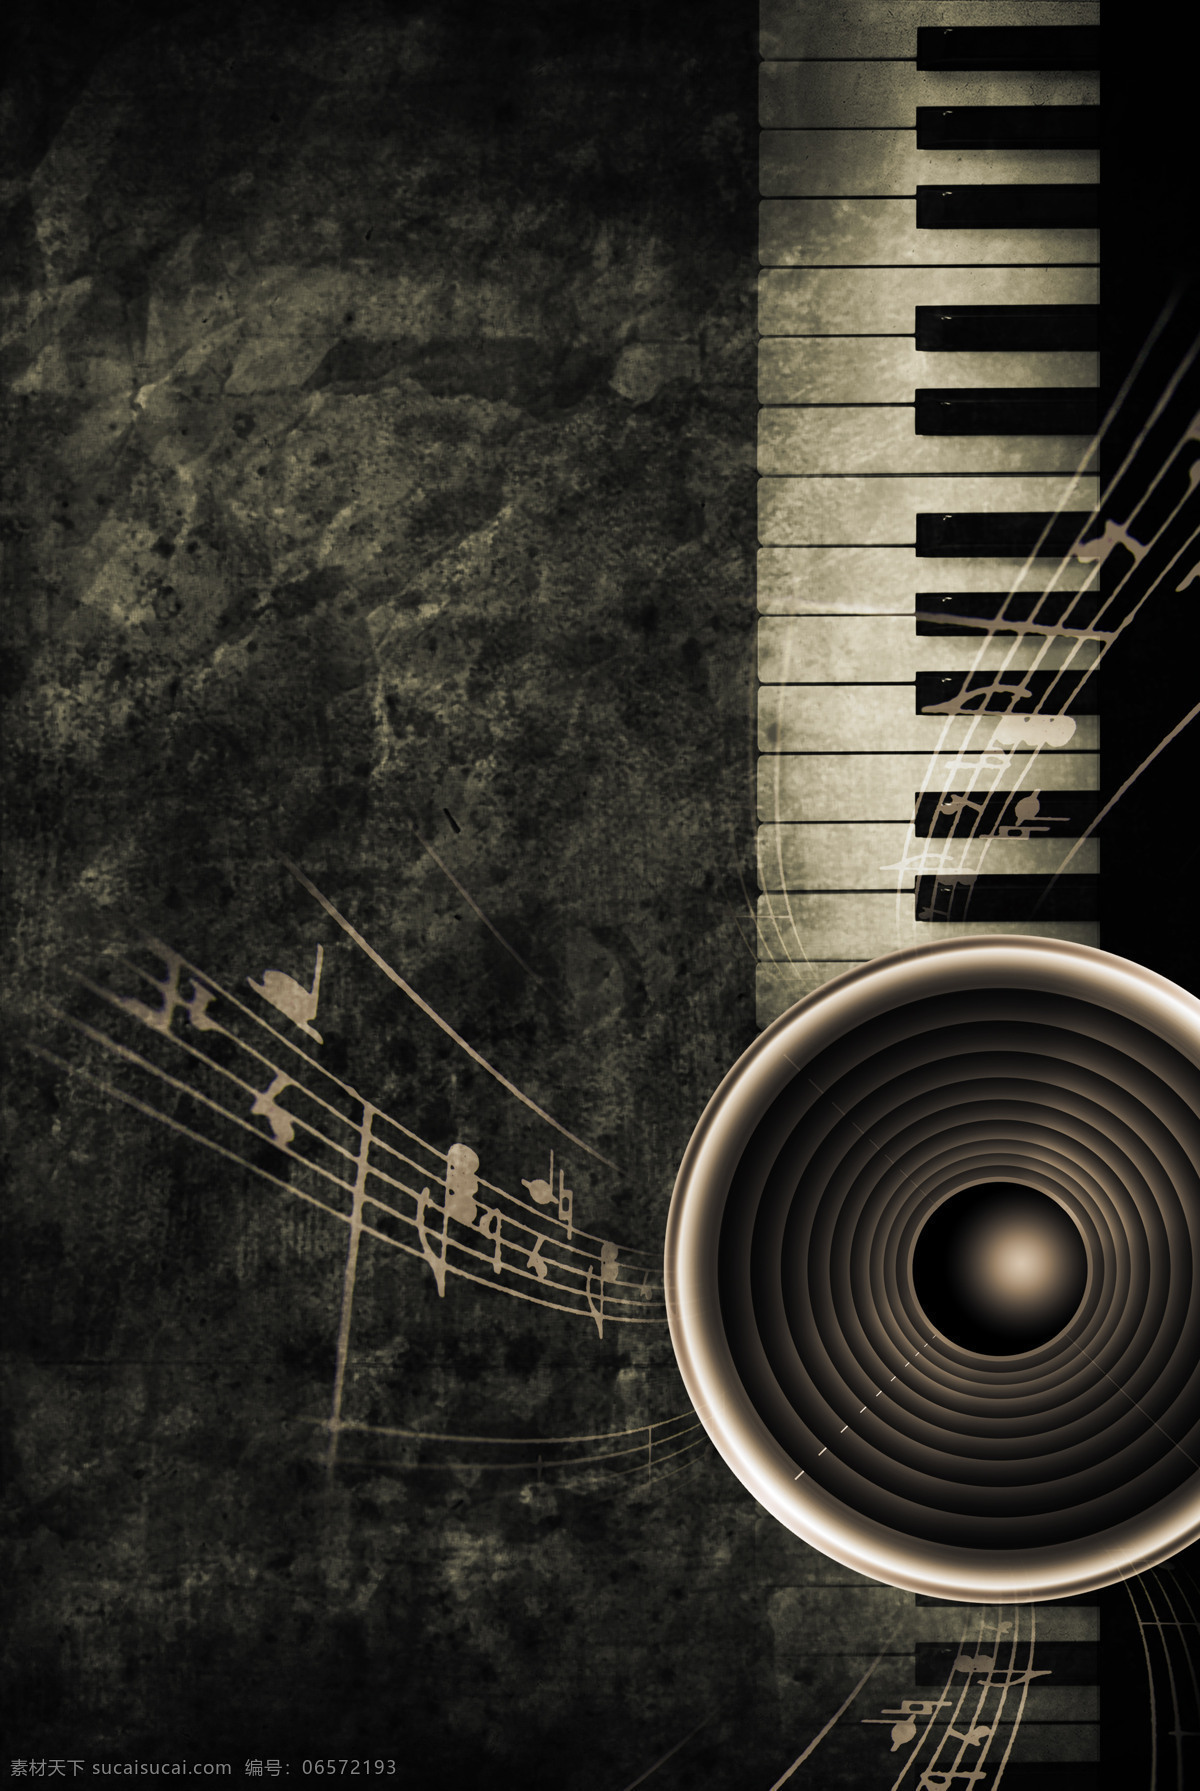 复古 音乐 素材图片 钢琴 喇叭 线普1 五线普 文化艺术 舞蹈音乐 设计图库 影音娱乐 生活百科